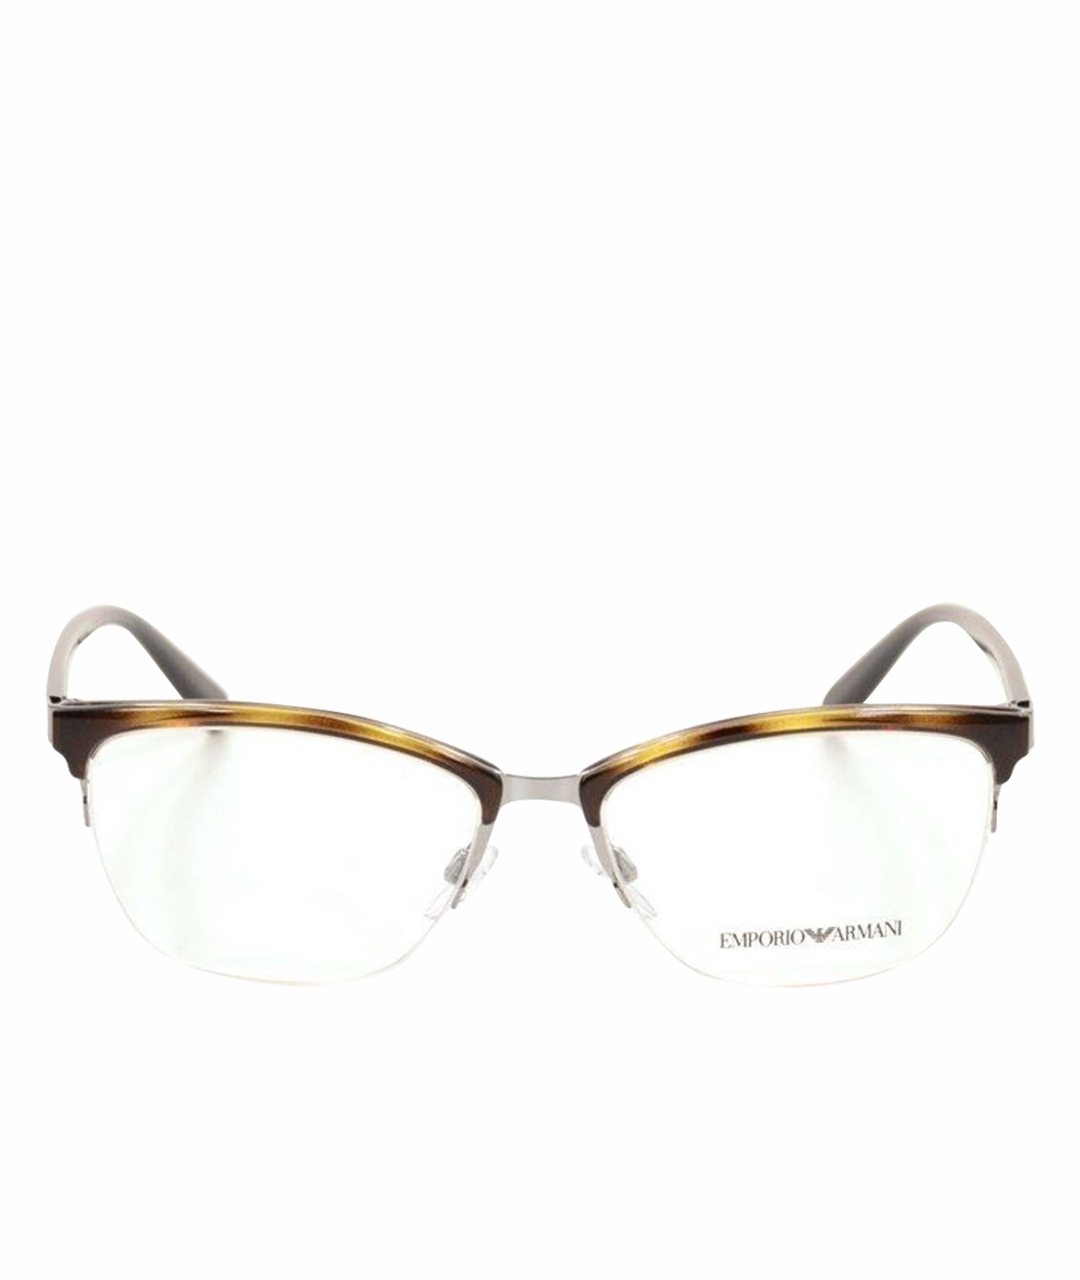 EMPORIO ARMANI Коричневые пластиковые солнцезащитные очки, фото 1